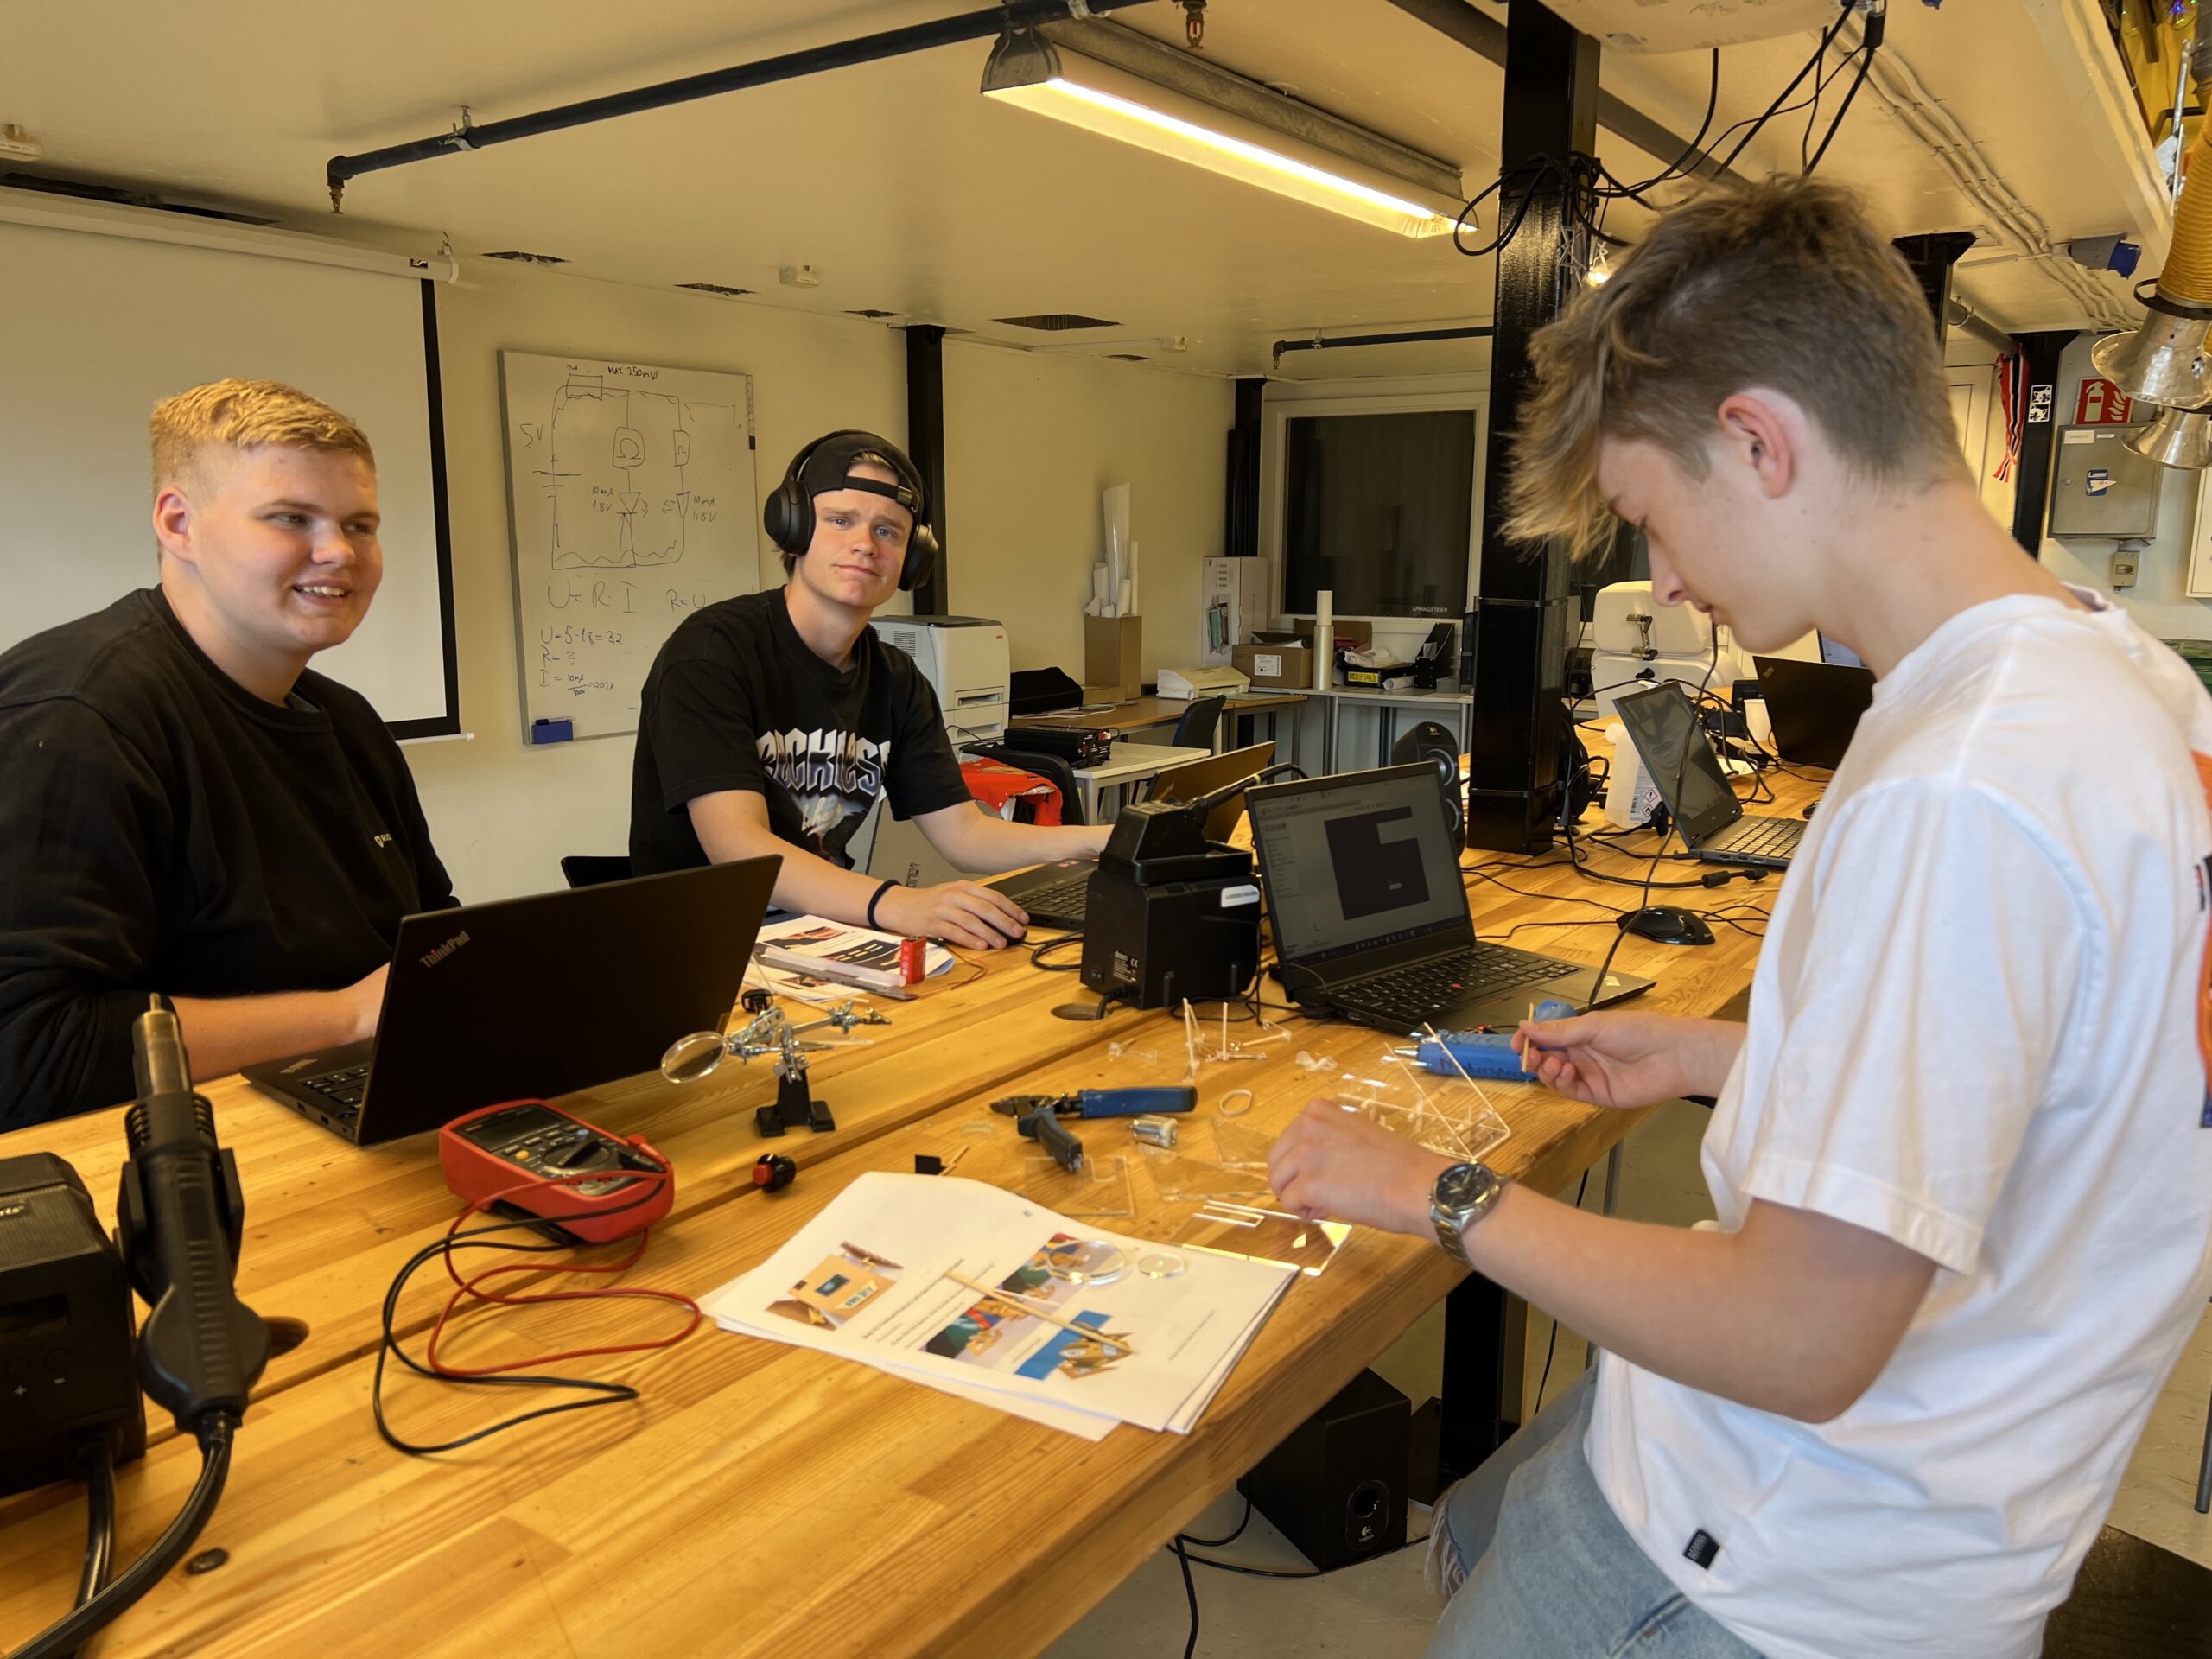 Gjennom «Makerspace» på Rud VGS får elevene utfolde skaperglede, engasjement og utforskertrang